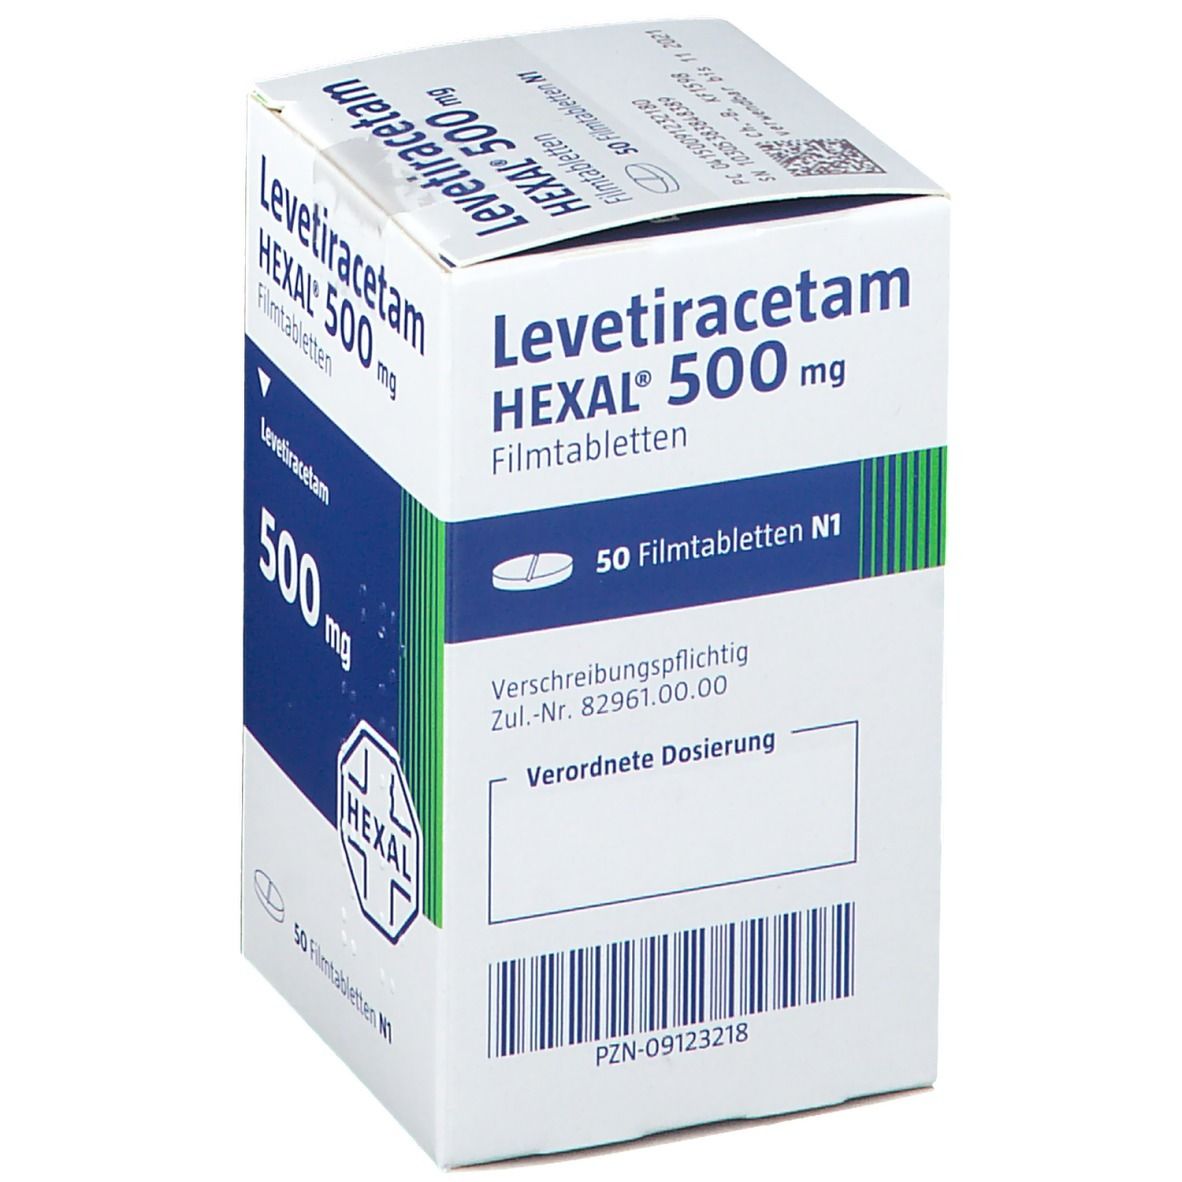 Levetiracetam HEXAL® 500 mg